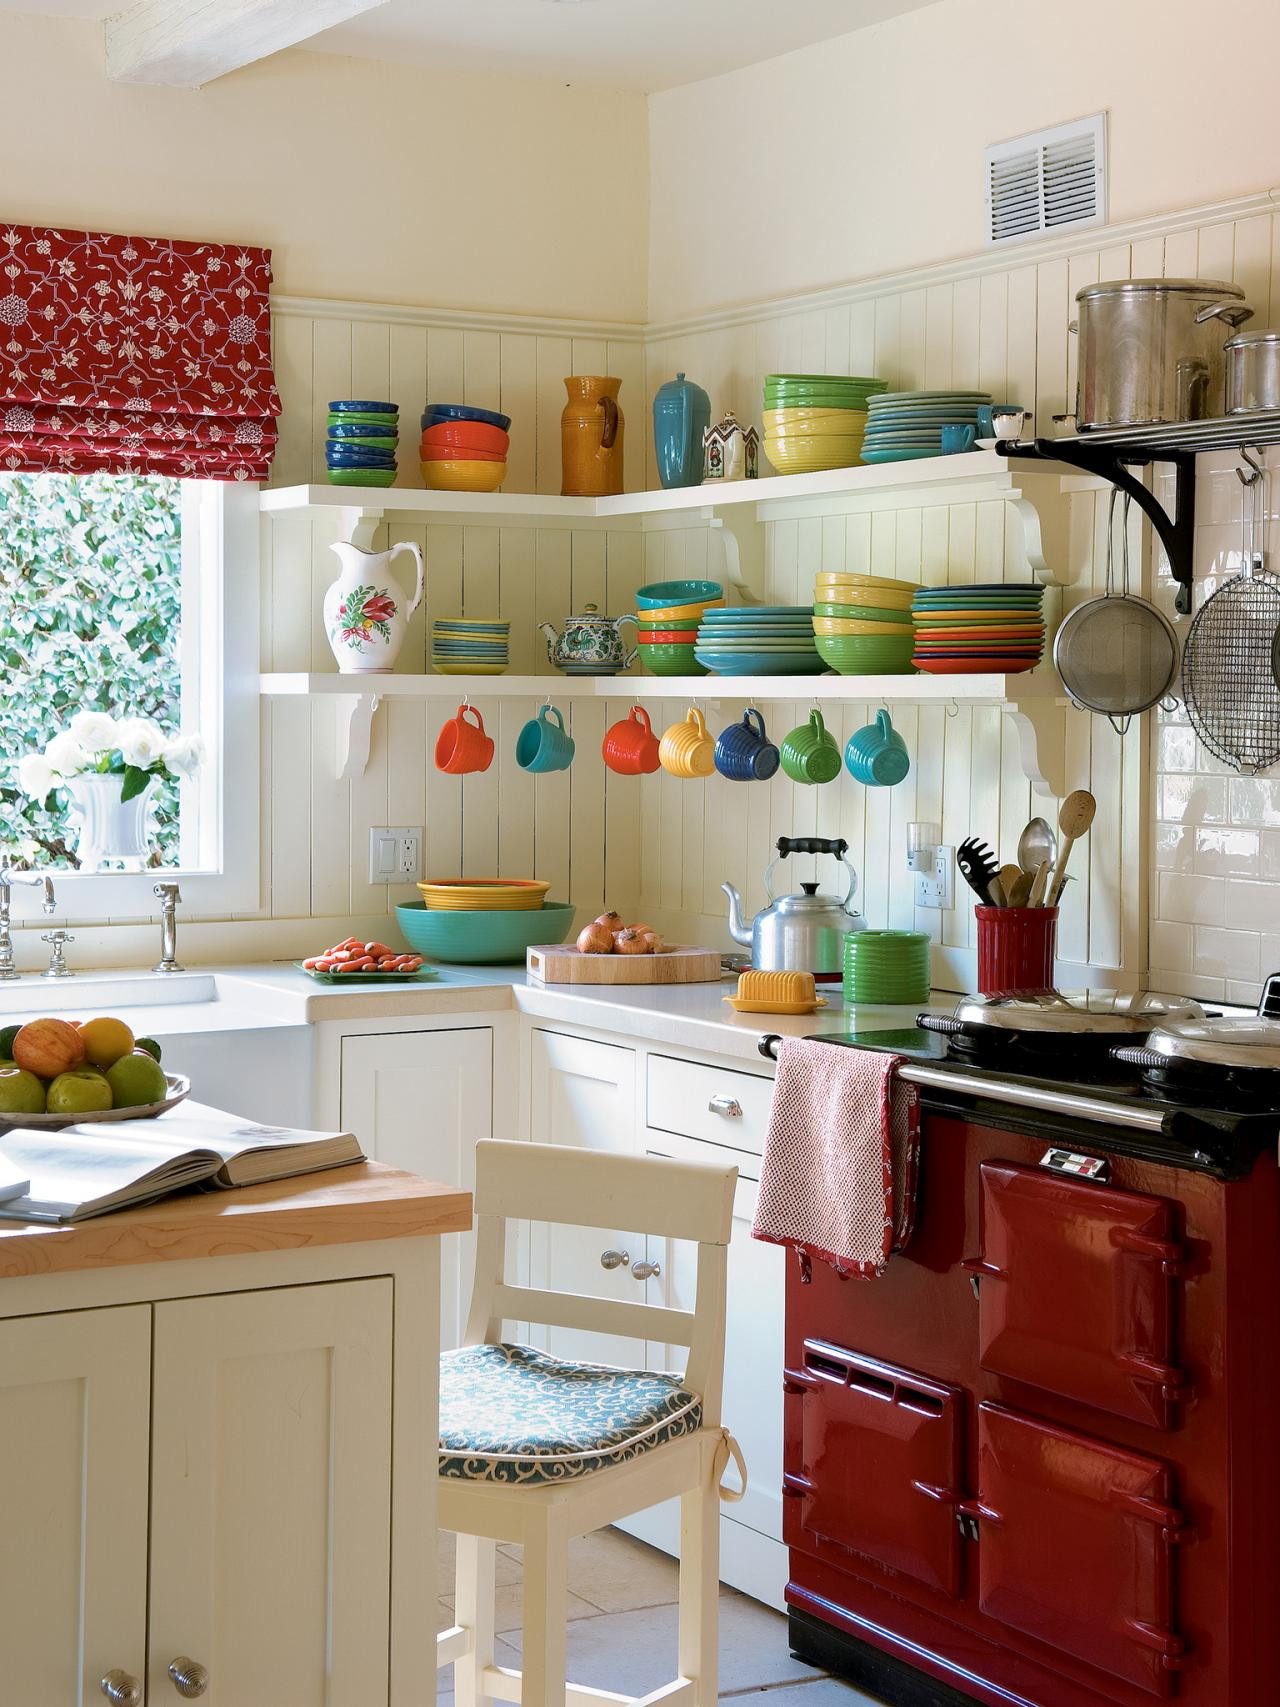 Small Kitchen Decor Ideas
 31 Creative Small Kitchen Design Ideas